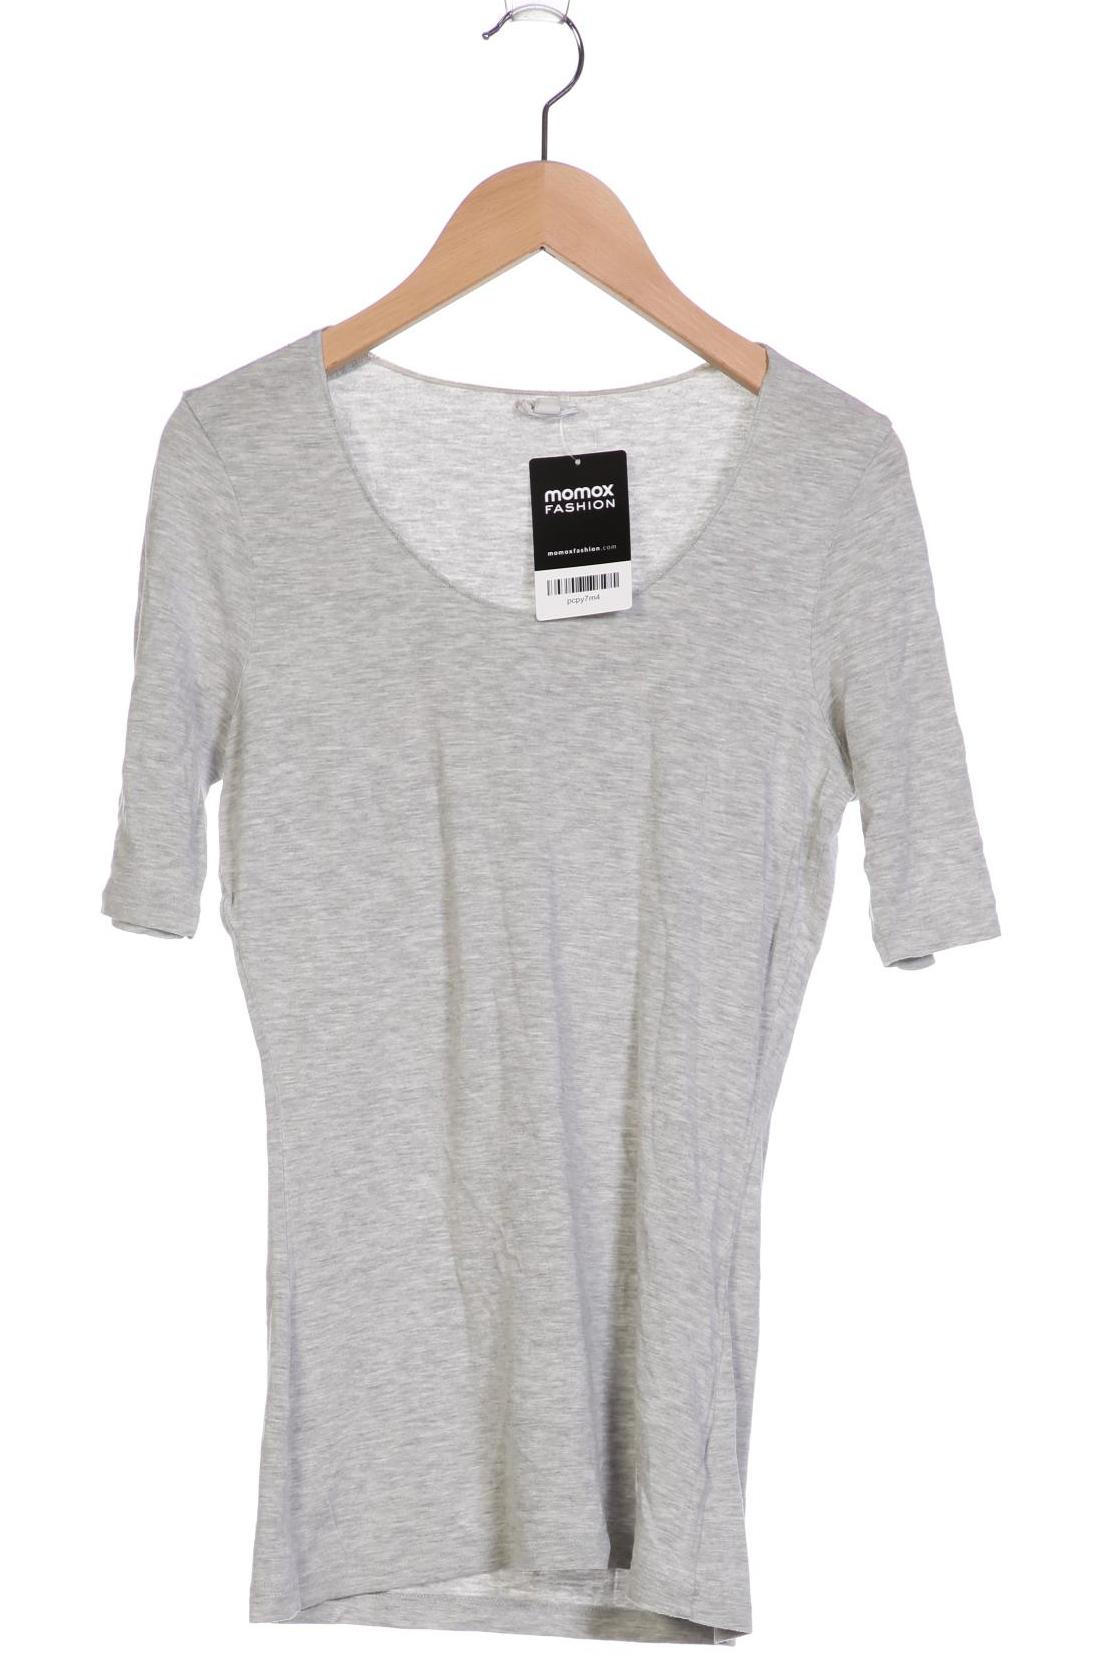 hessnatur Damen T-Shirt, grau, Gr. 34 von hessnatur